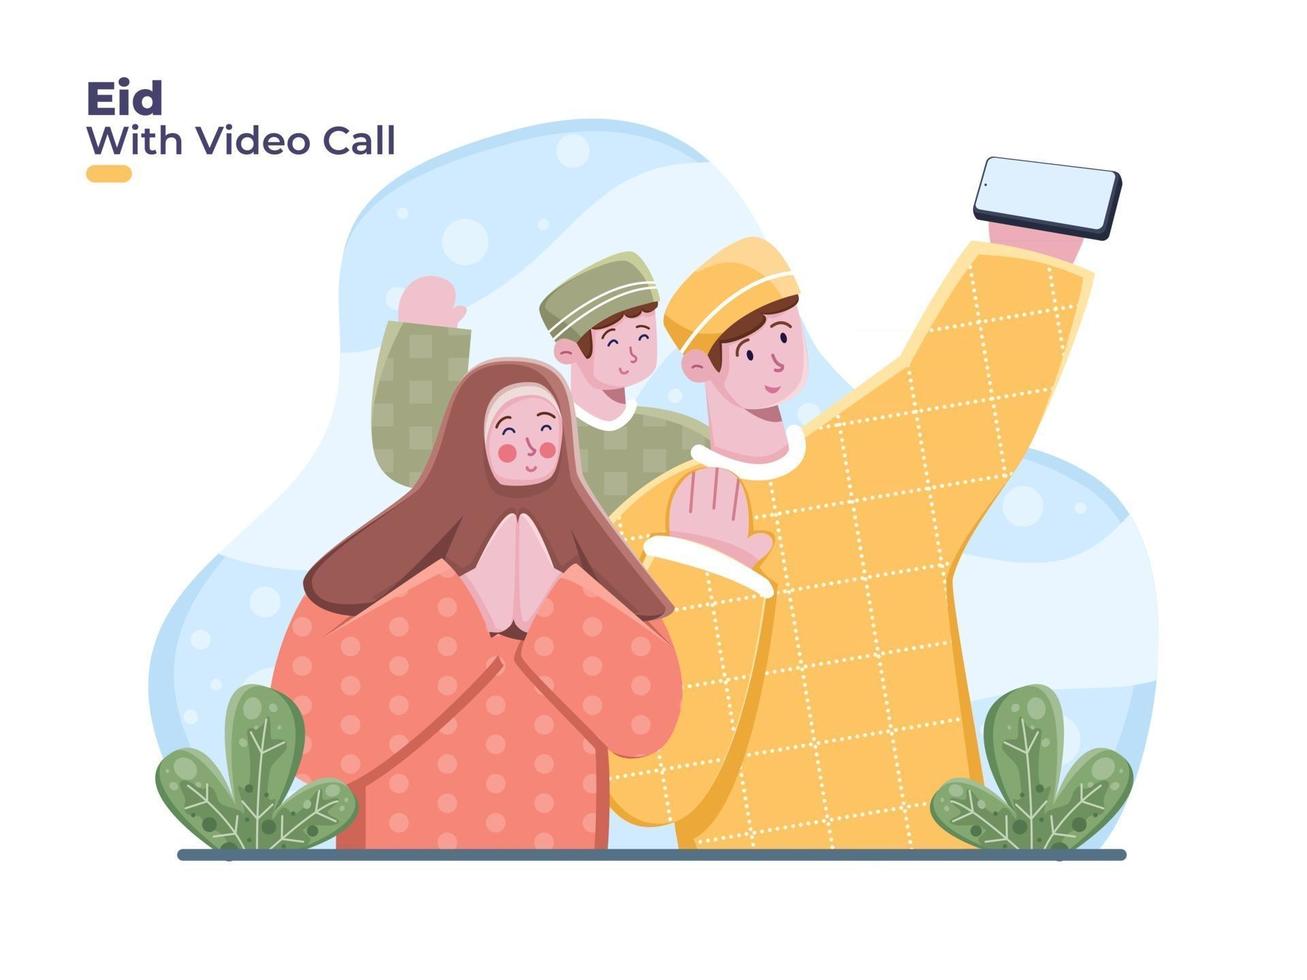 muslimsk familj använder smartphone för videosamtal för att fira och hälsa eid mubarak på indonesiska. eid mubarak med videosamtal online tillsammans firar eid al fitr vektor